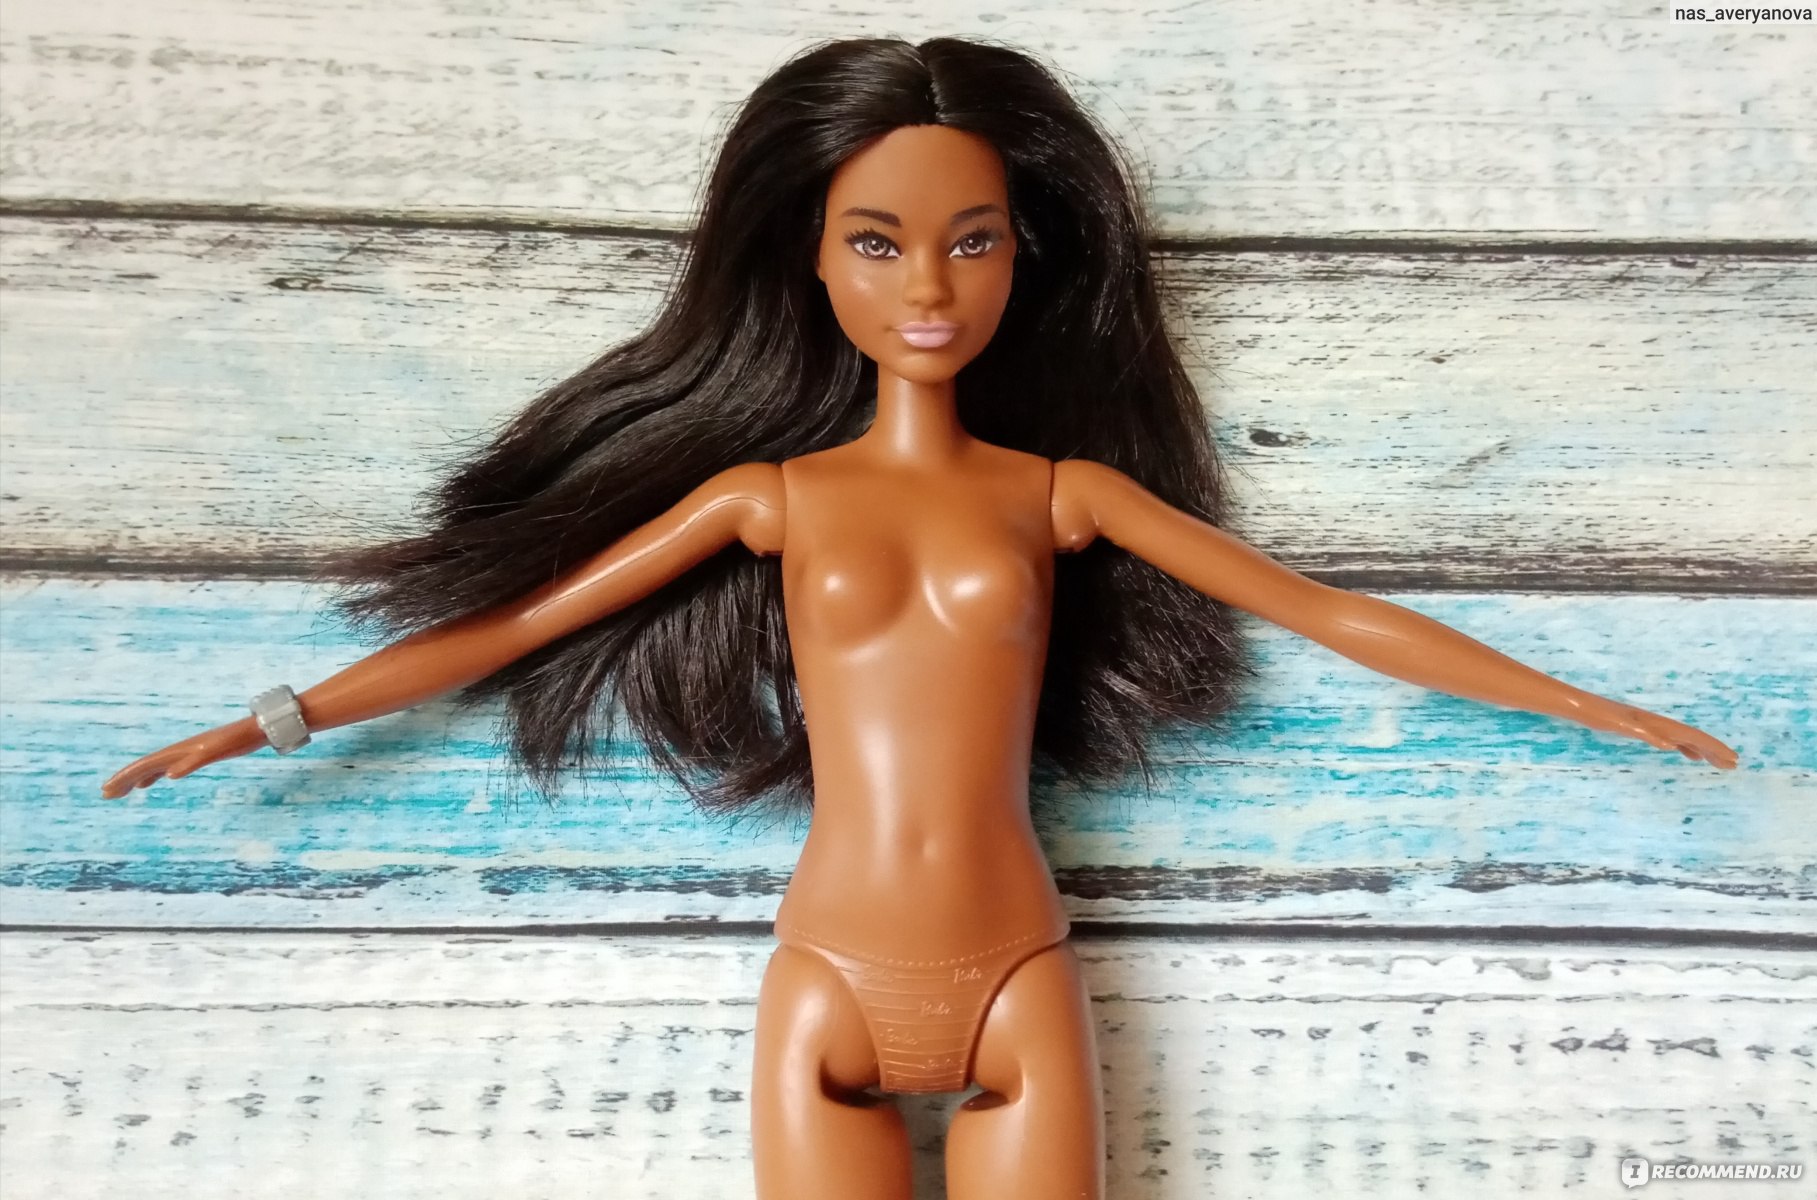 Категория: Детские игрушки Бренд: Barbie.